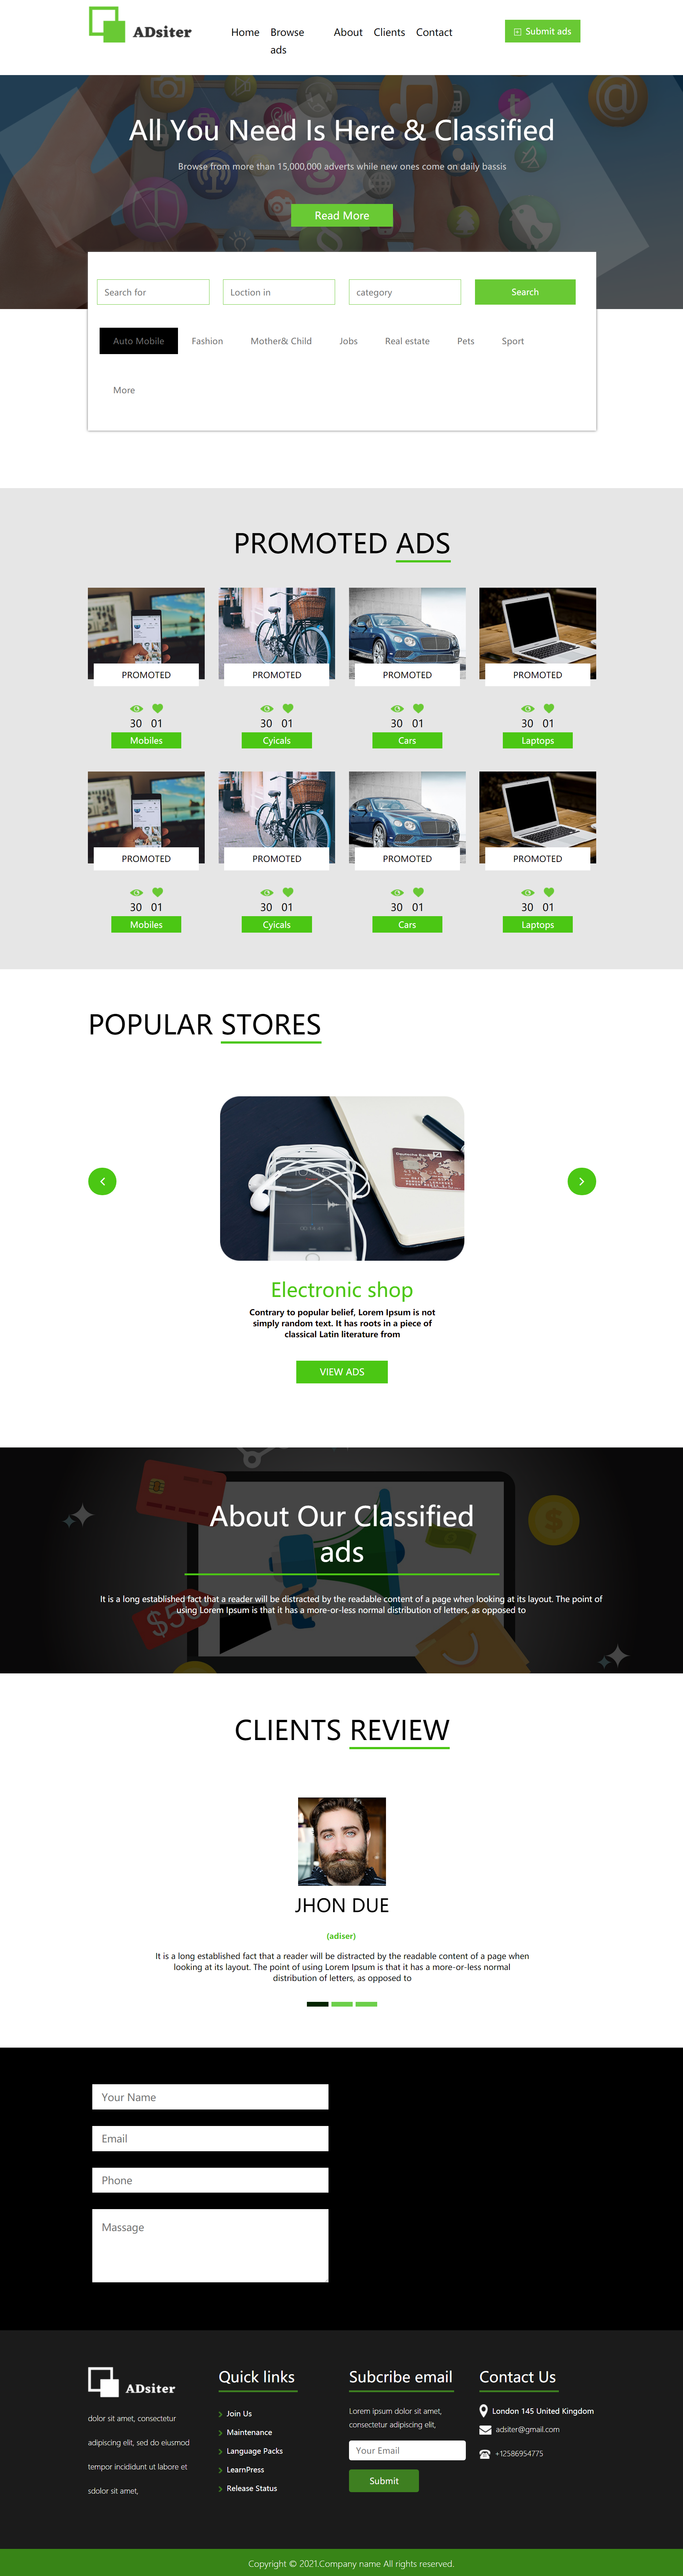 绿色简洁风格响应式创意在线交易企业网站模板